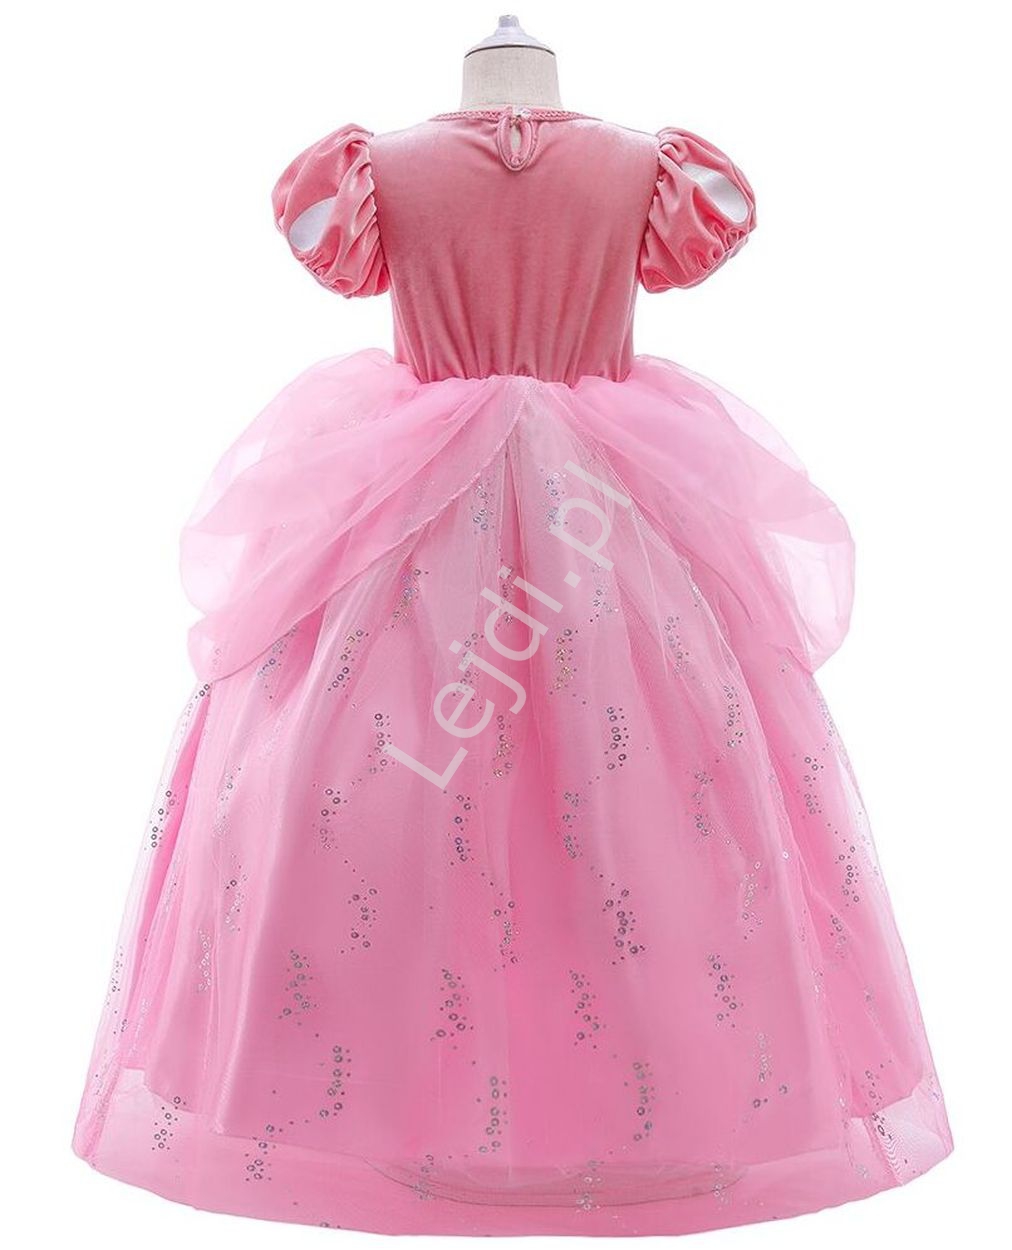 Różowa sukienka na bal karanawałowy, przebranie Arielka z Małej syrenki